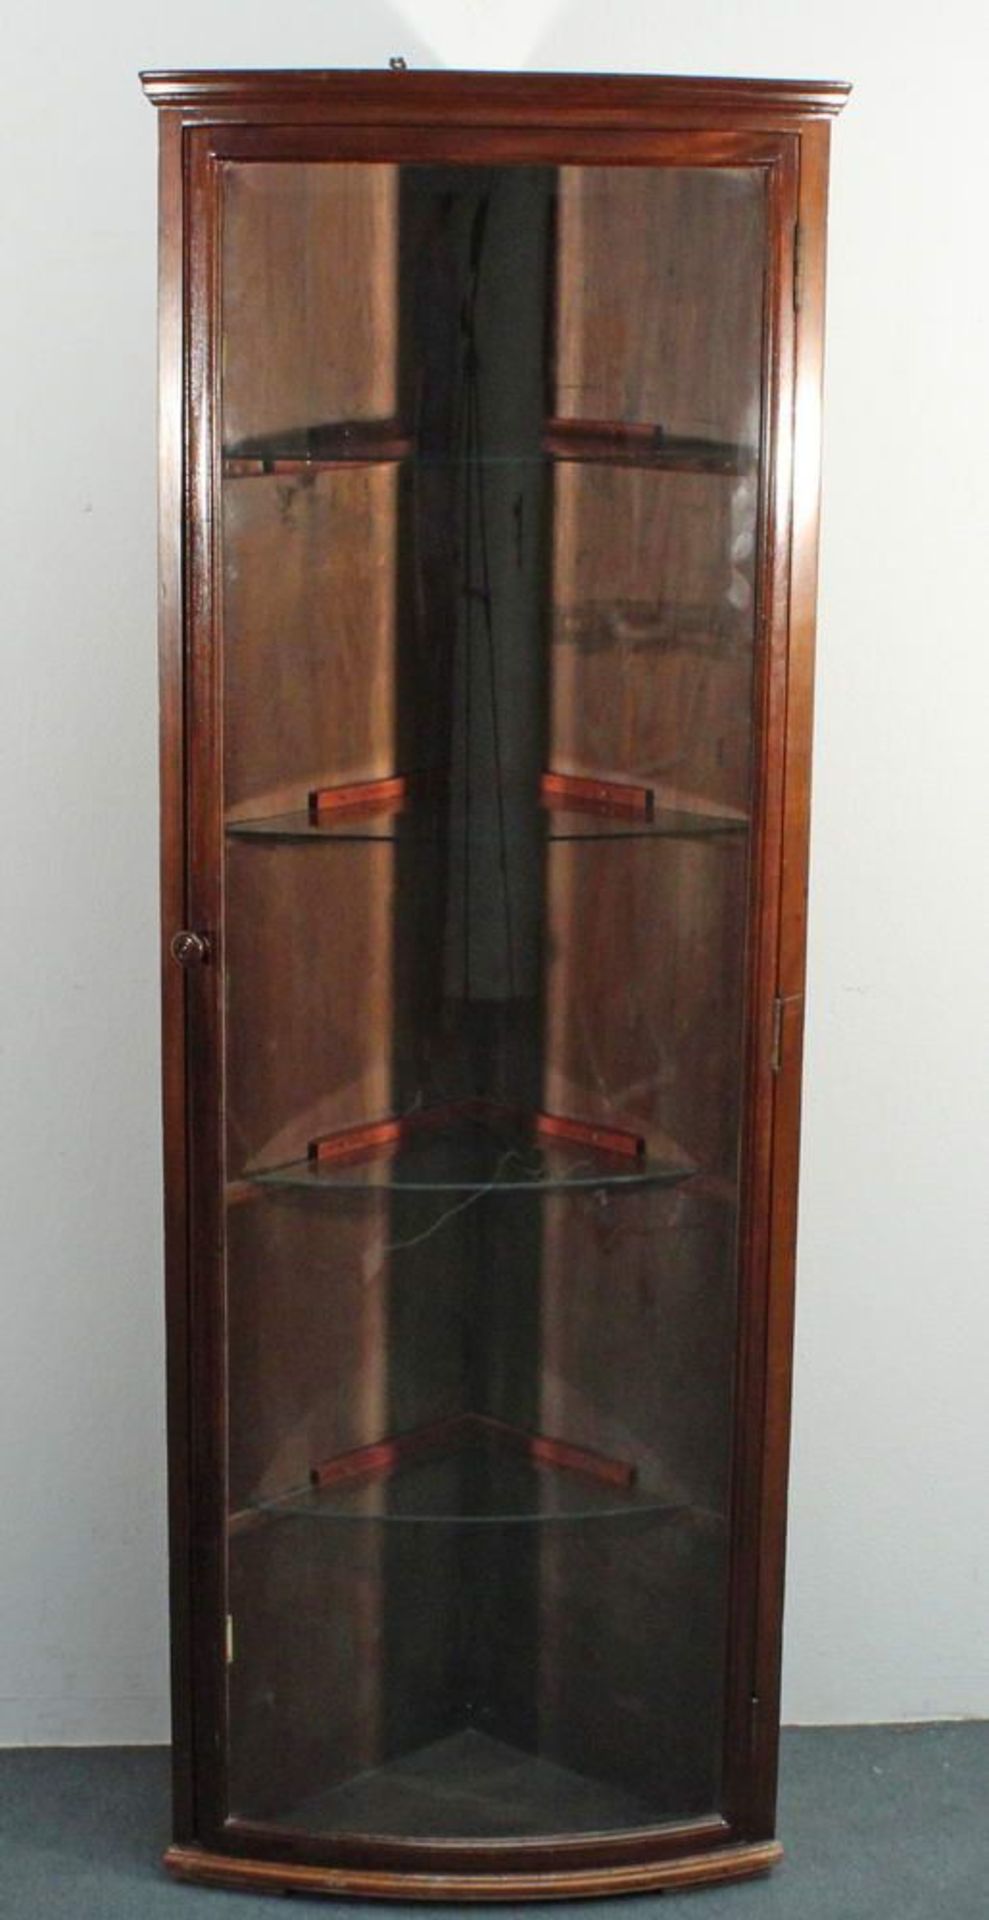 Reserve: 240 EUR        Eckvitrine, um 1900, Mahagoni, leicht gerundete Front, eine Glastür, - Image 2 of 2